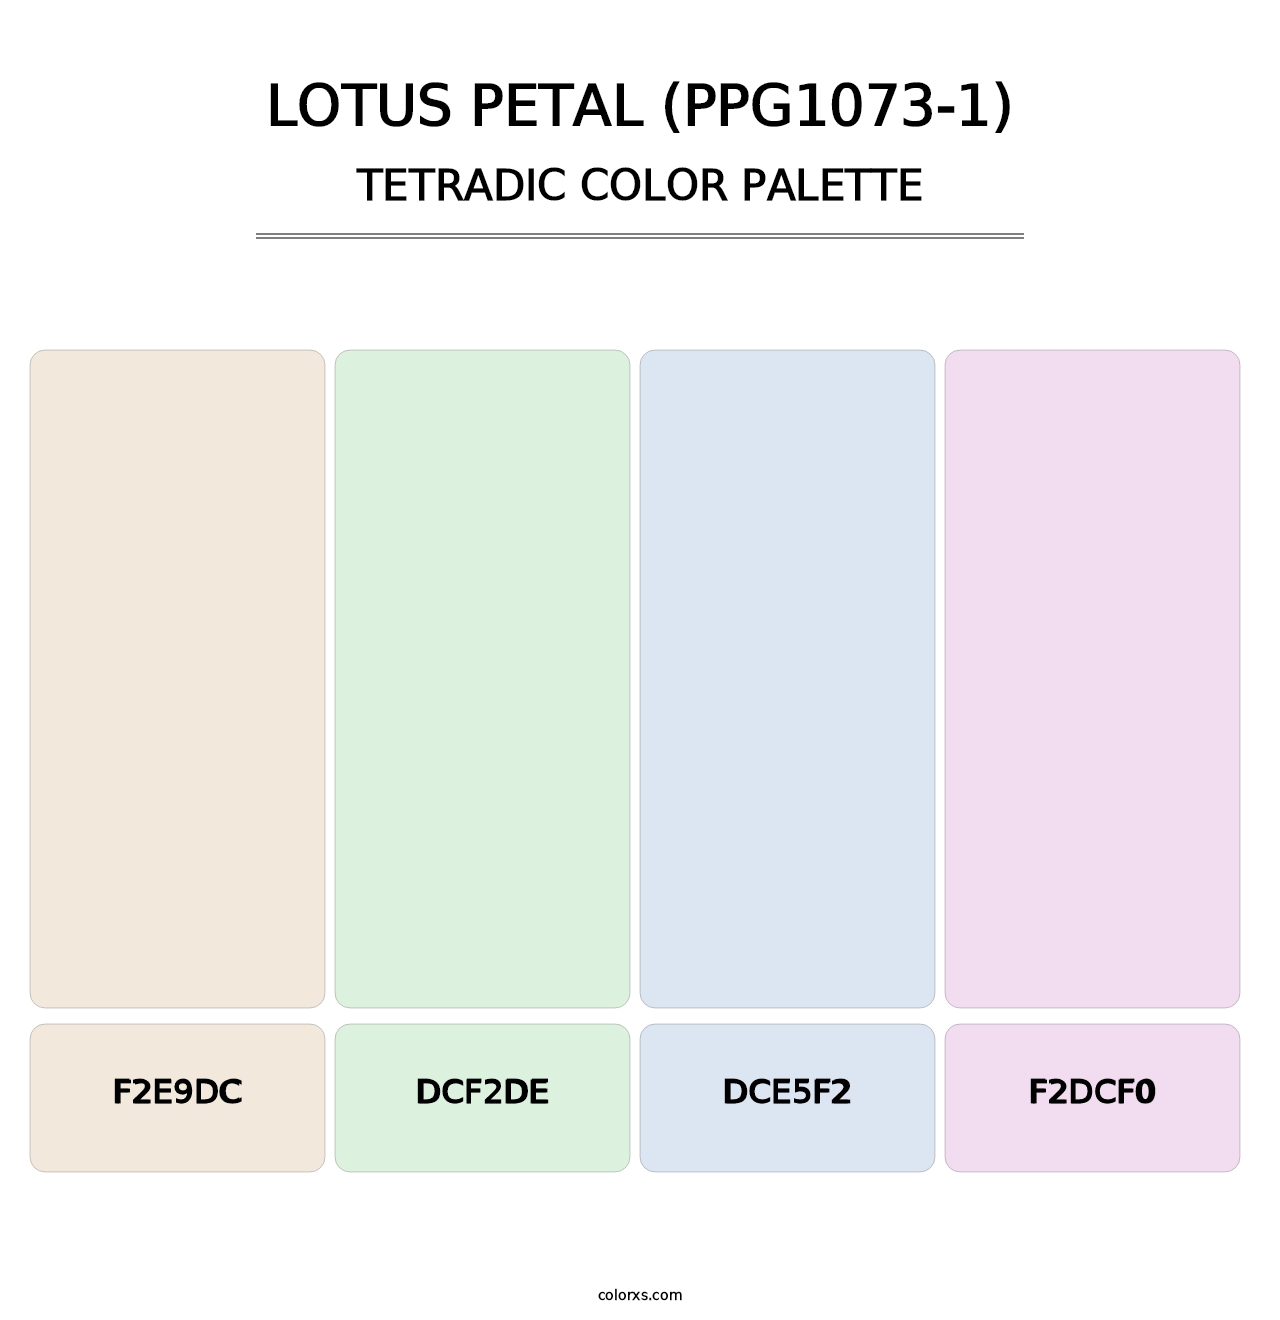 Lotus Petal (PPG1073-1) - Tetradic Color Palette